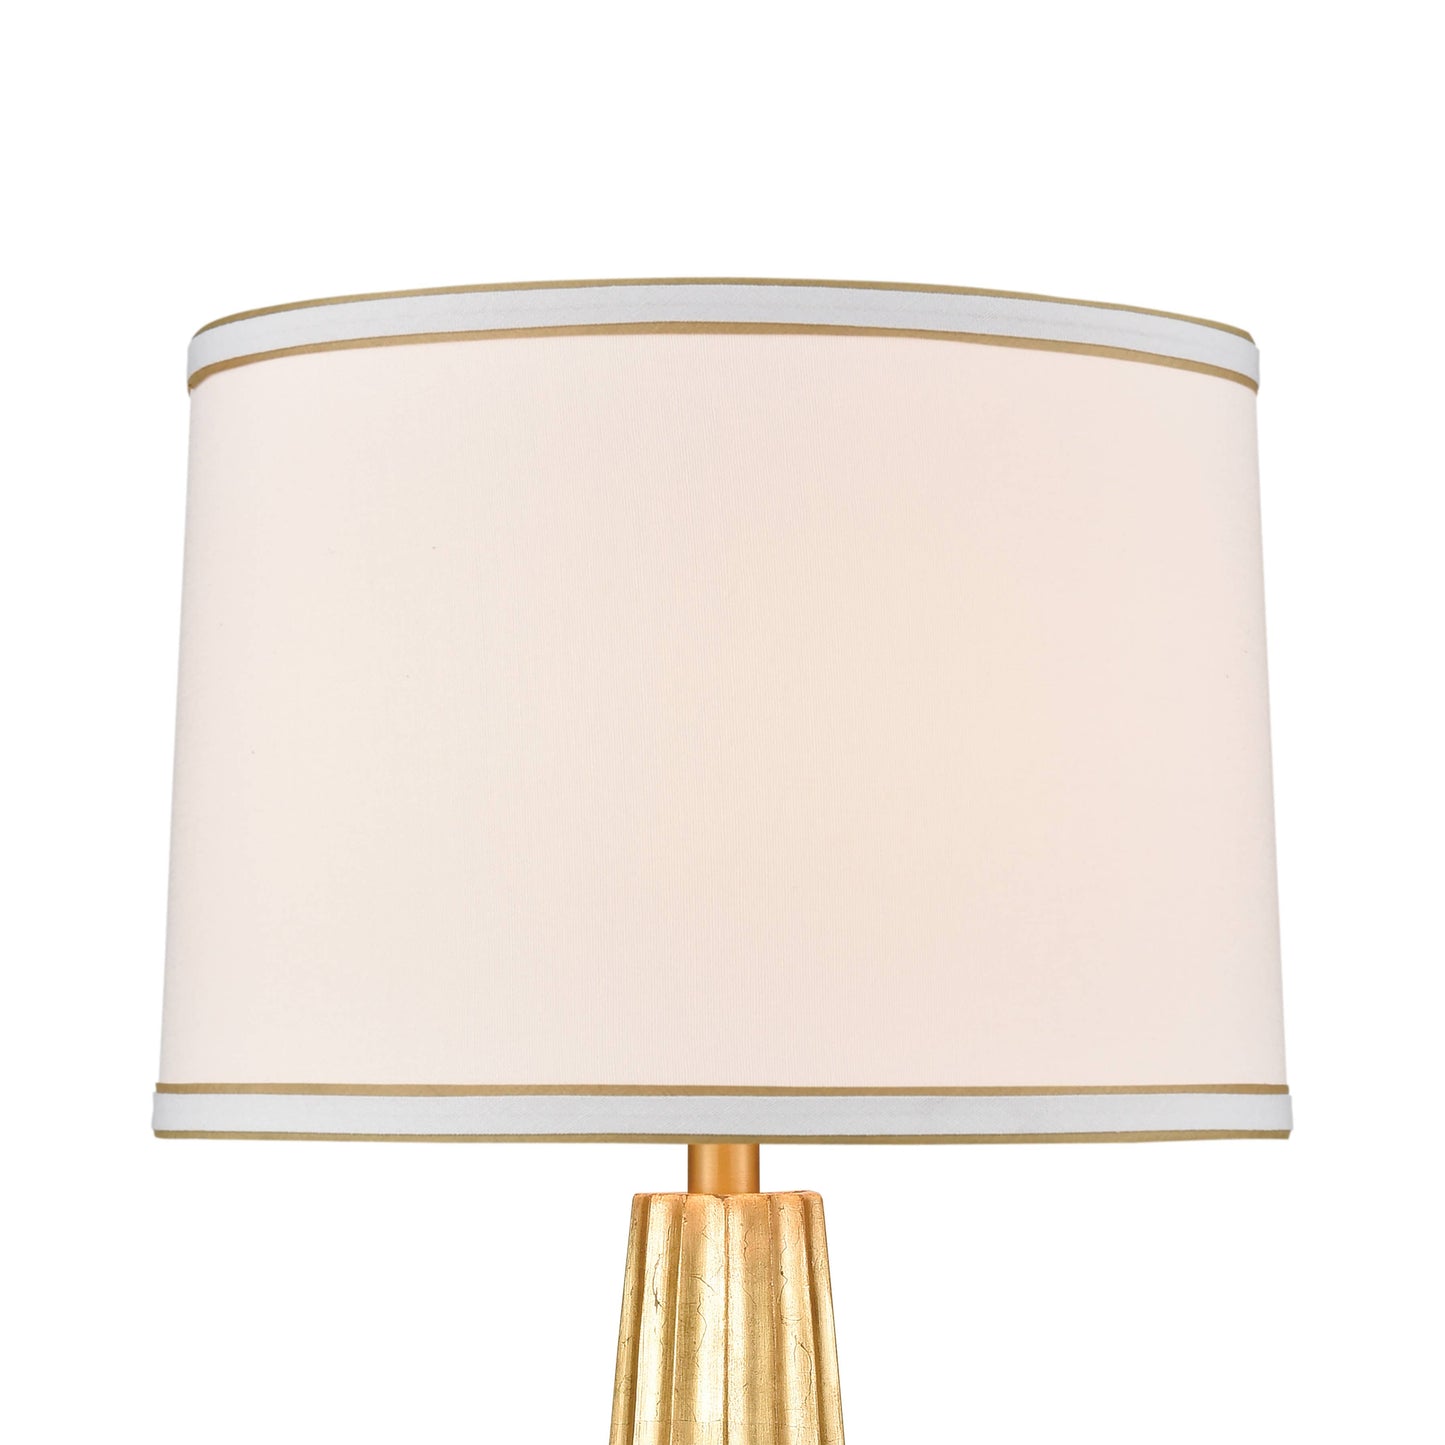 Hightower Tbl Lamp: Composite / Gold Leaf